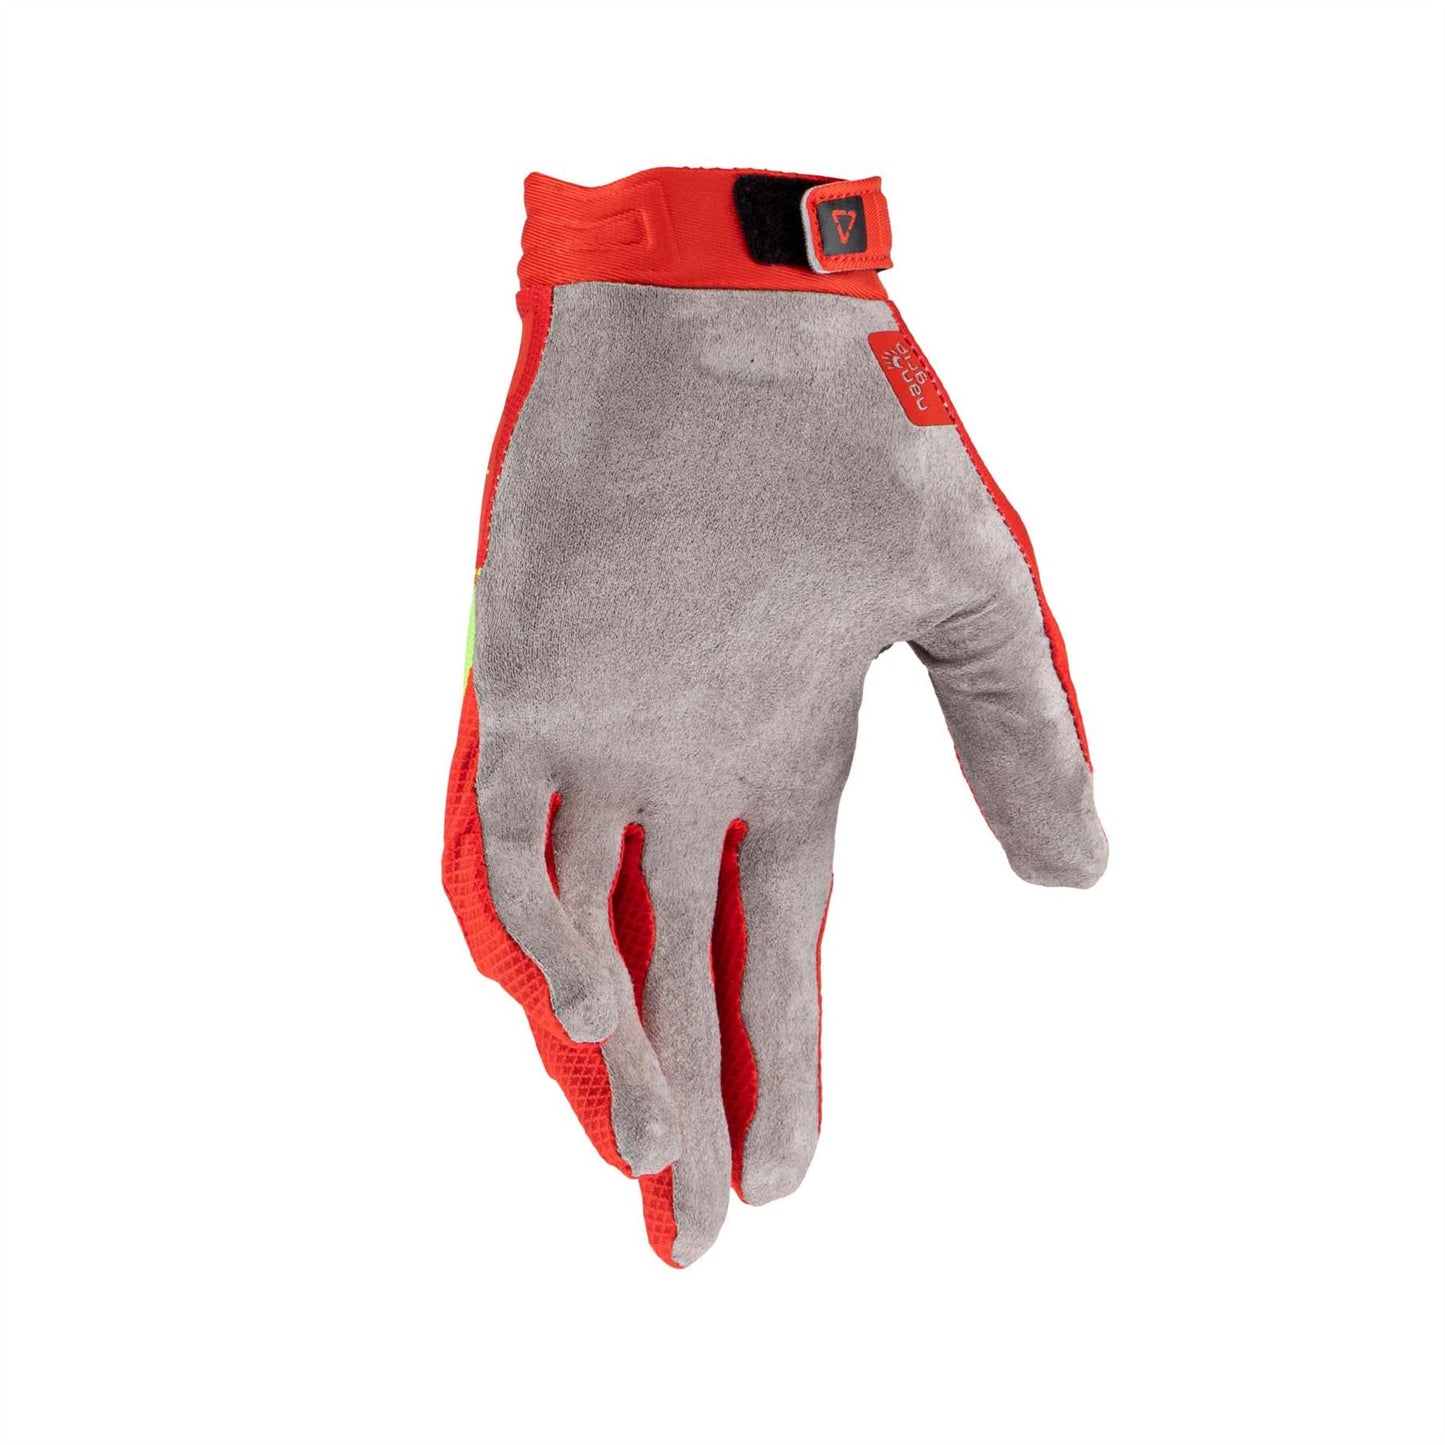 Leatt 2024 Gloves 2.5 X-Flow Red